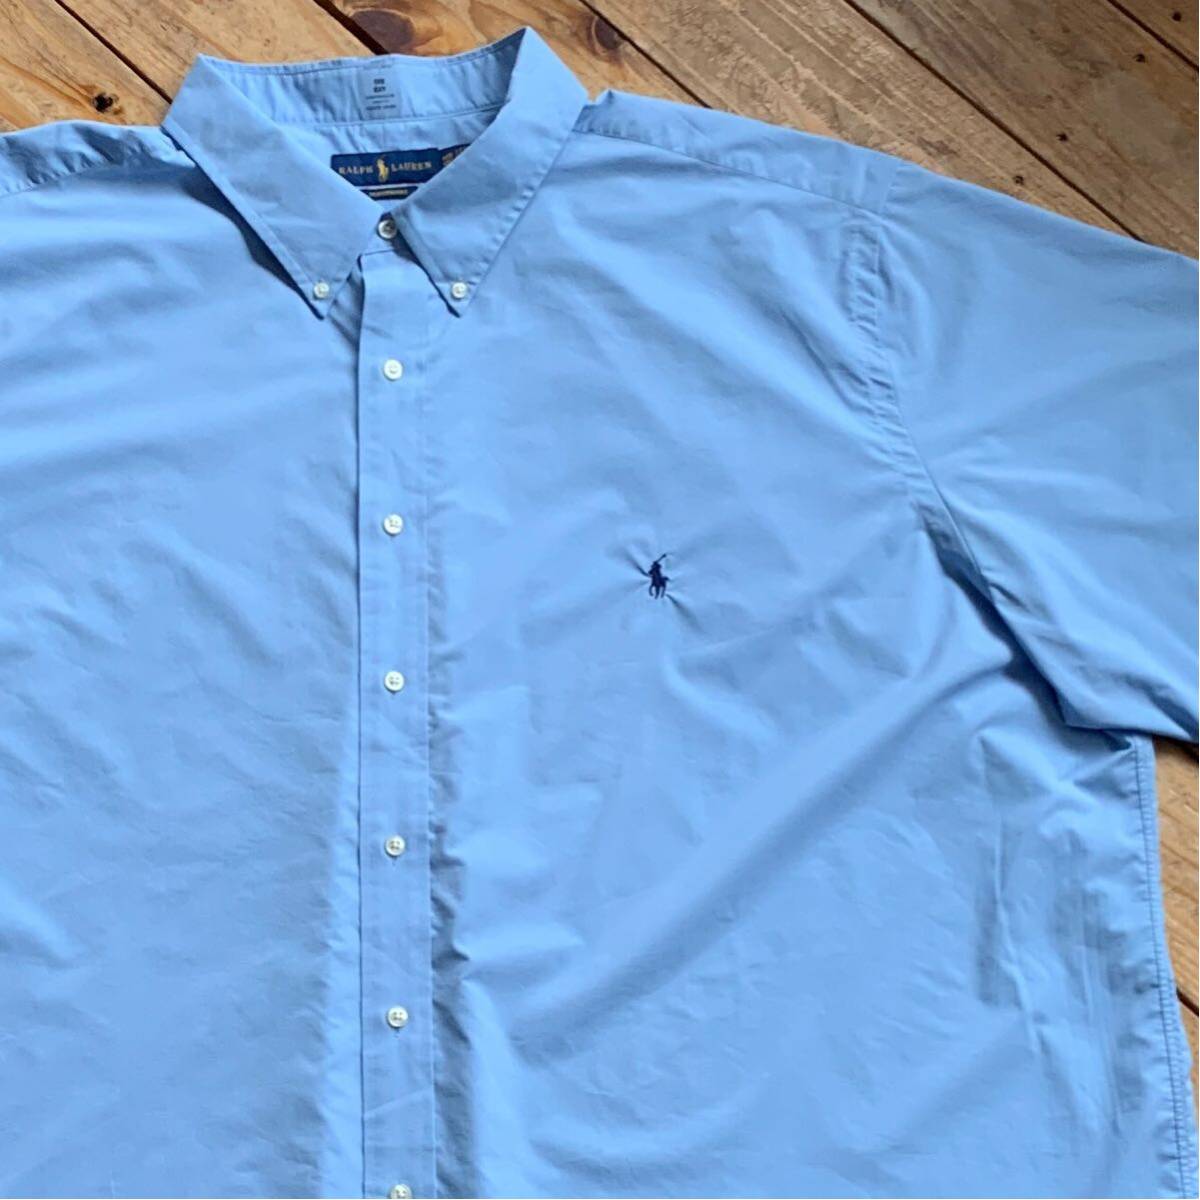 新品 ラルフローレン Ralph Lauren 半袖シャツ メンズ 4XB ビッグサイズ 大柄 ボタンダウン ワンポイント ブルー タグ付き未使用品 T2428_画像1